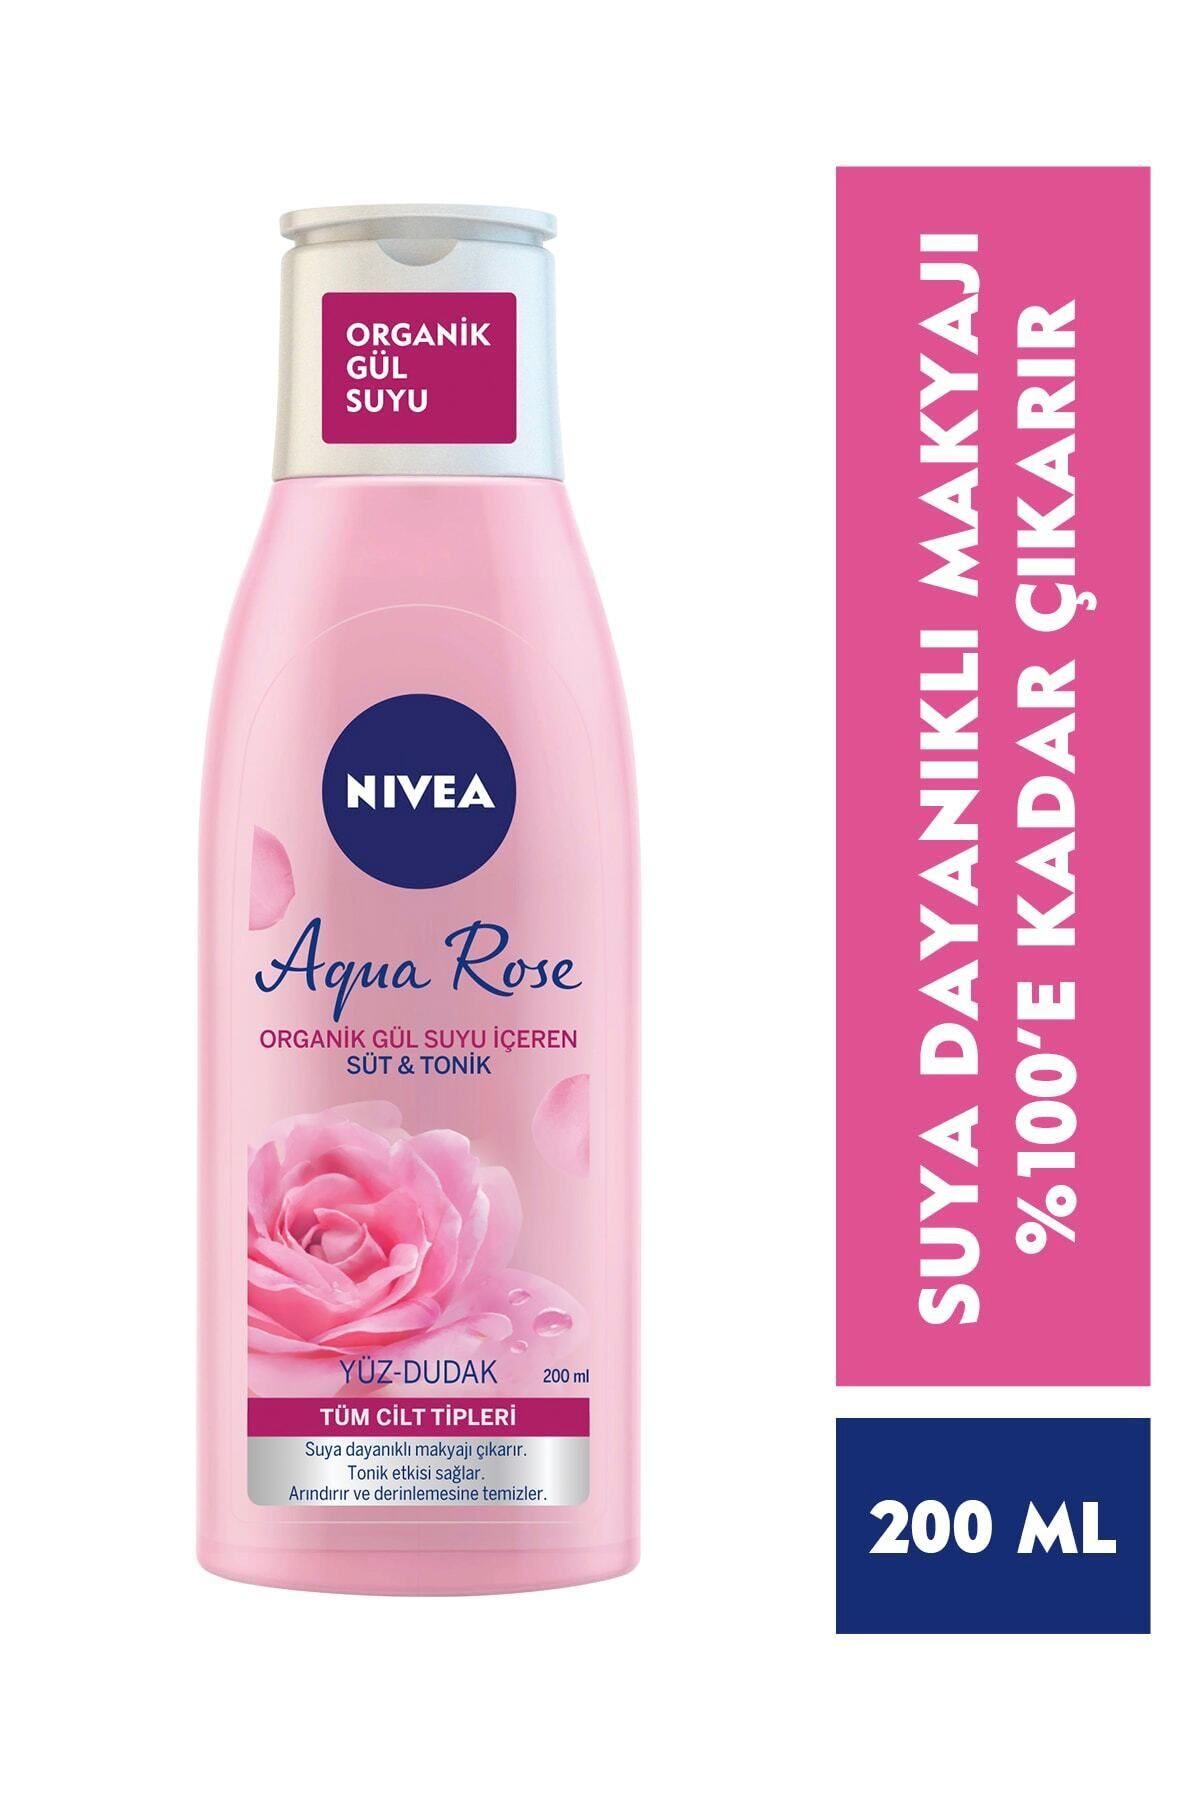 NIVEA Aqua Rose Organik Gül Suyu Içeren Süt&tonik 200ml,etkili Makyaj Temizleme